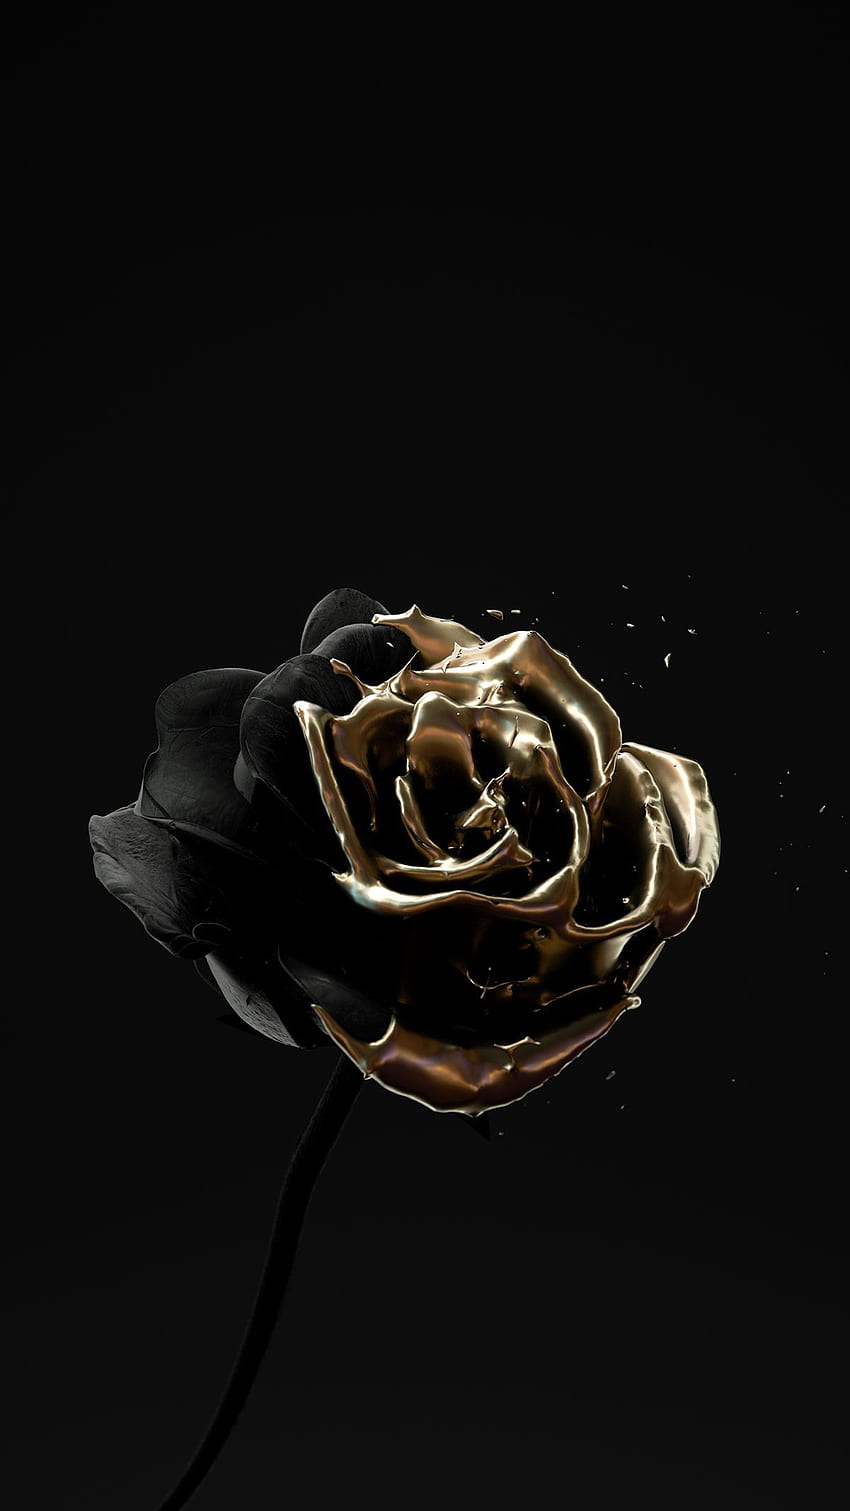 Best 100 Black Rose Pictures  Download Free Images on Unsplash